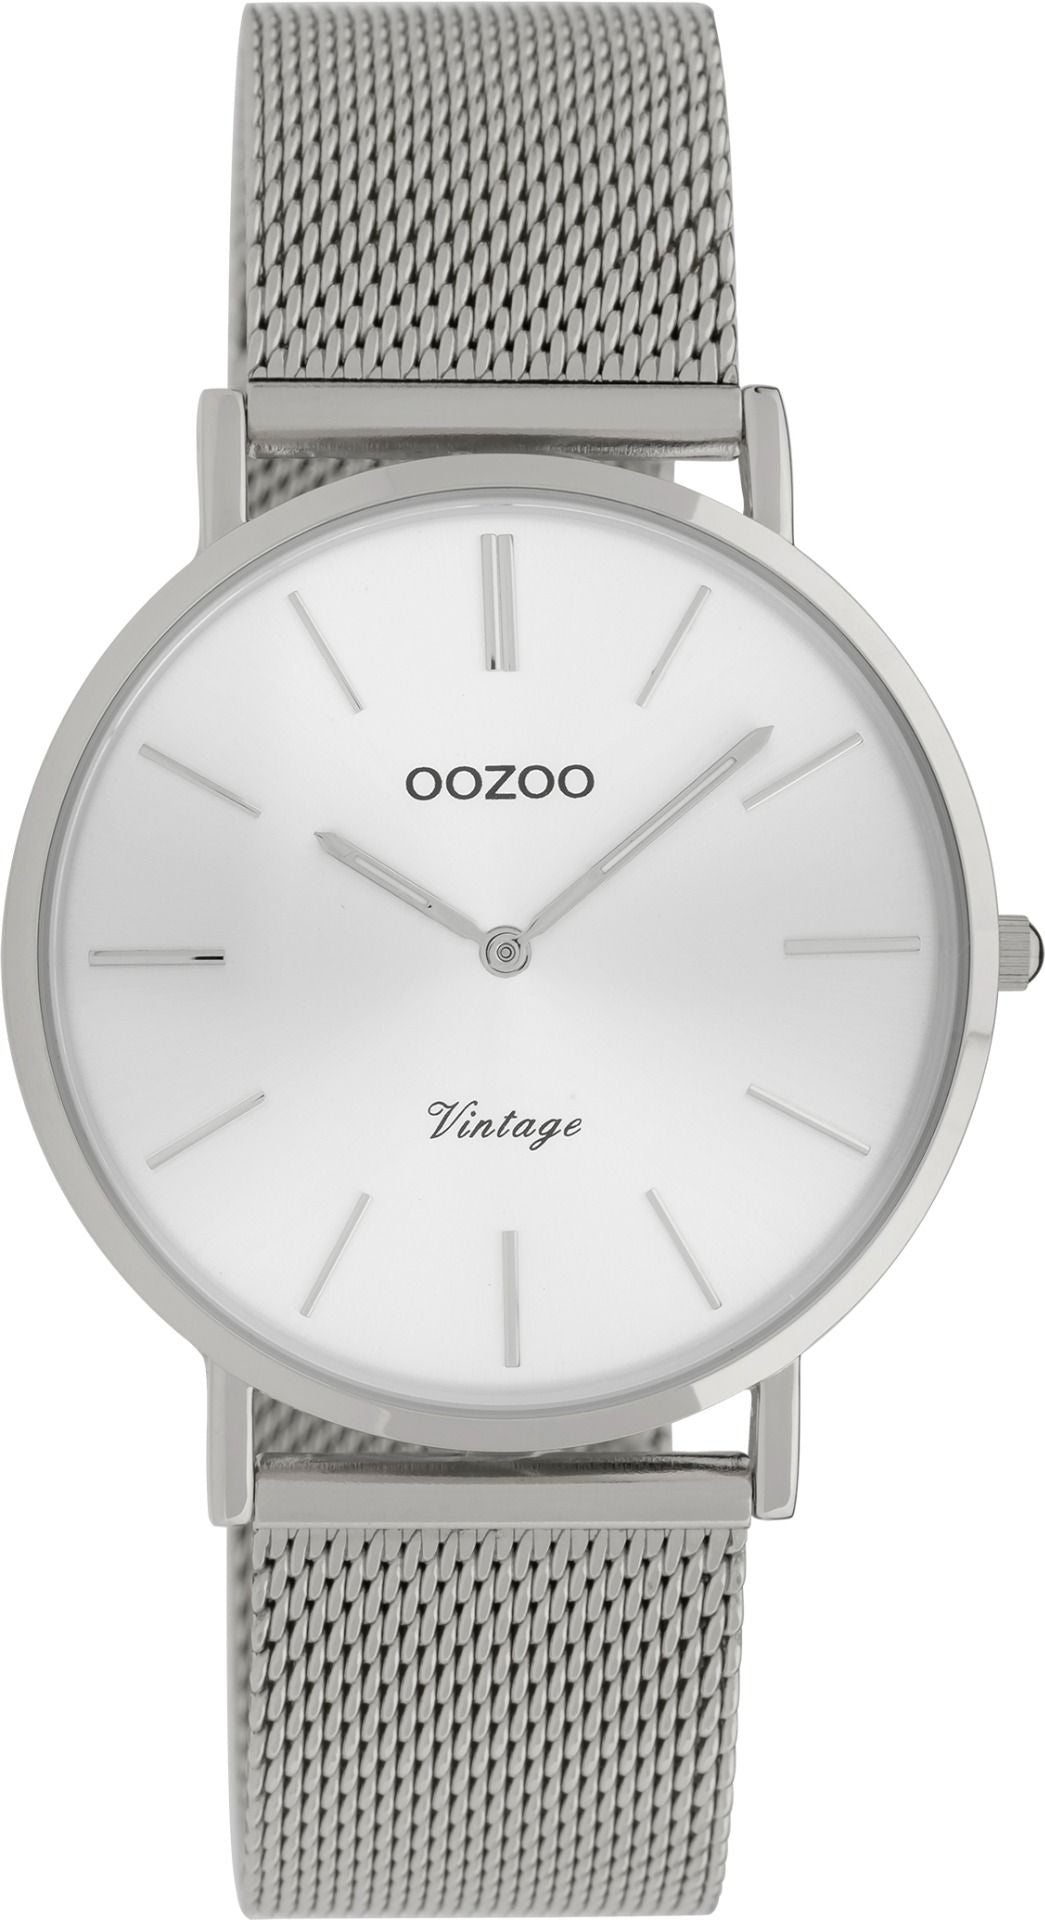 OOZOO Vintage 9906 - 36 mm